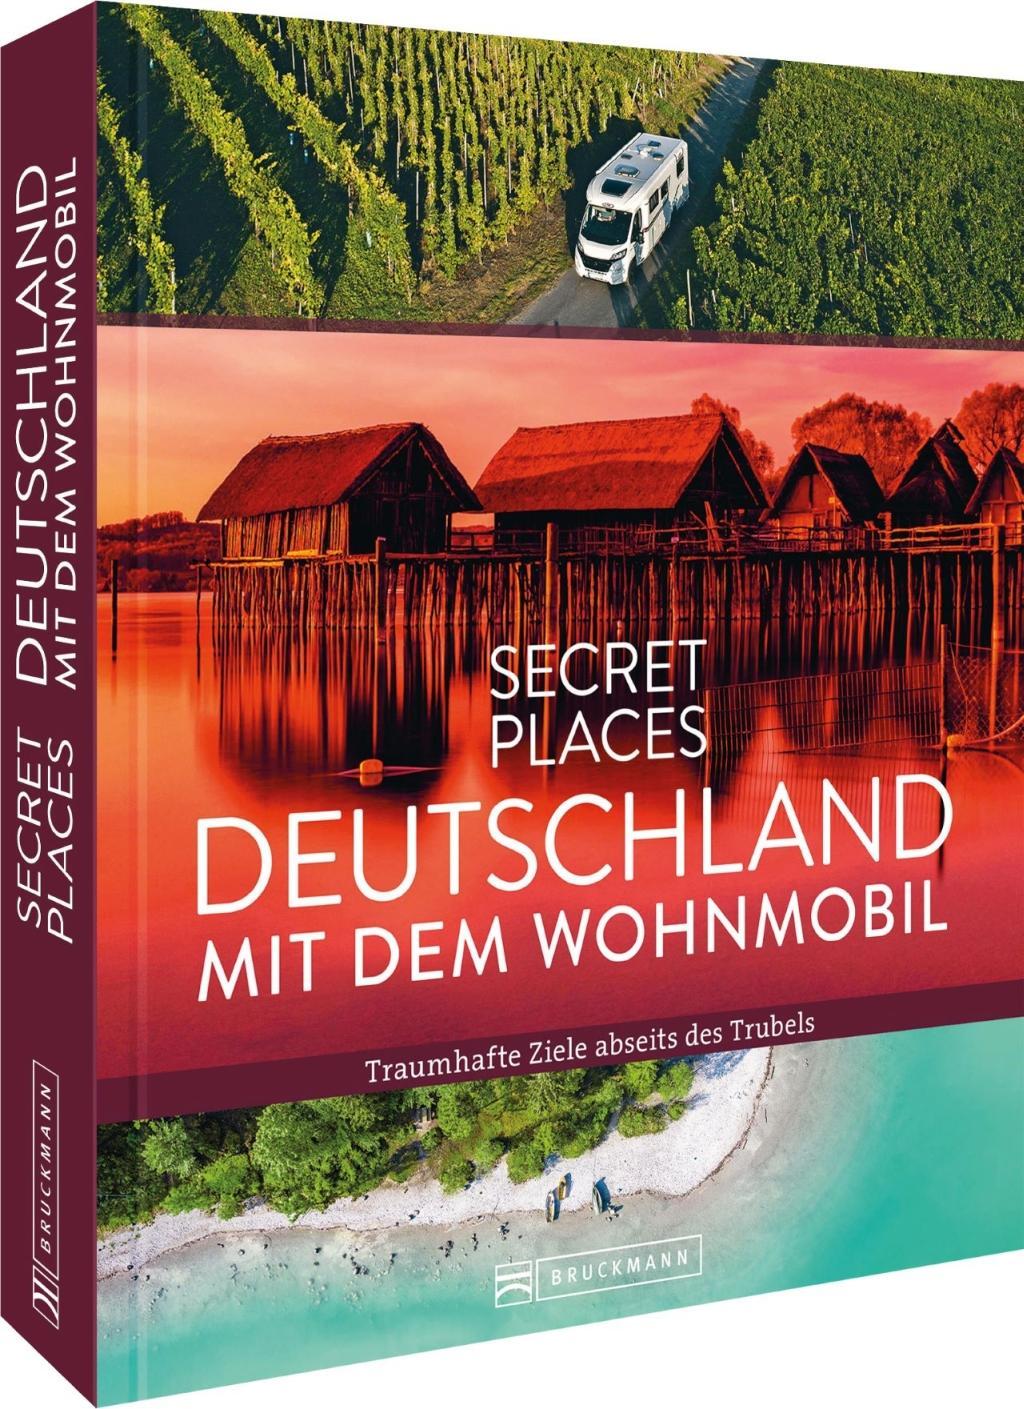 Secret Places Deutschland mit dem Wohnmobil Traumhafte Ziele abseits des Trubels